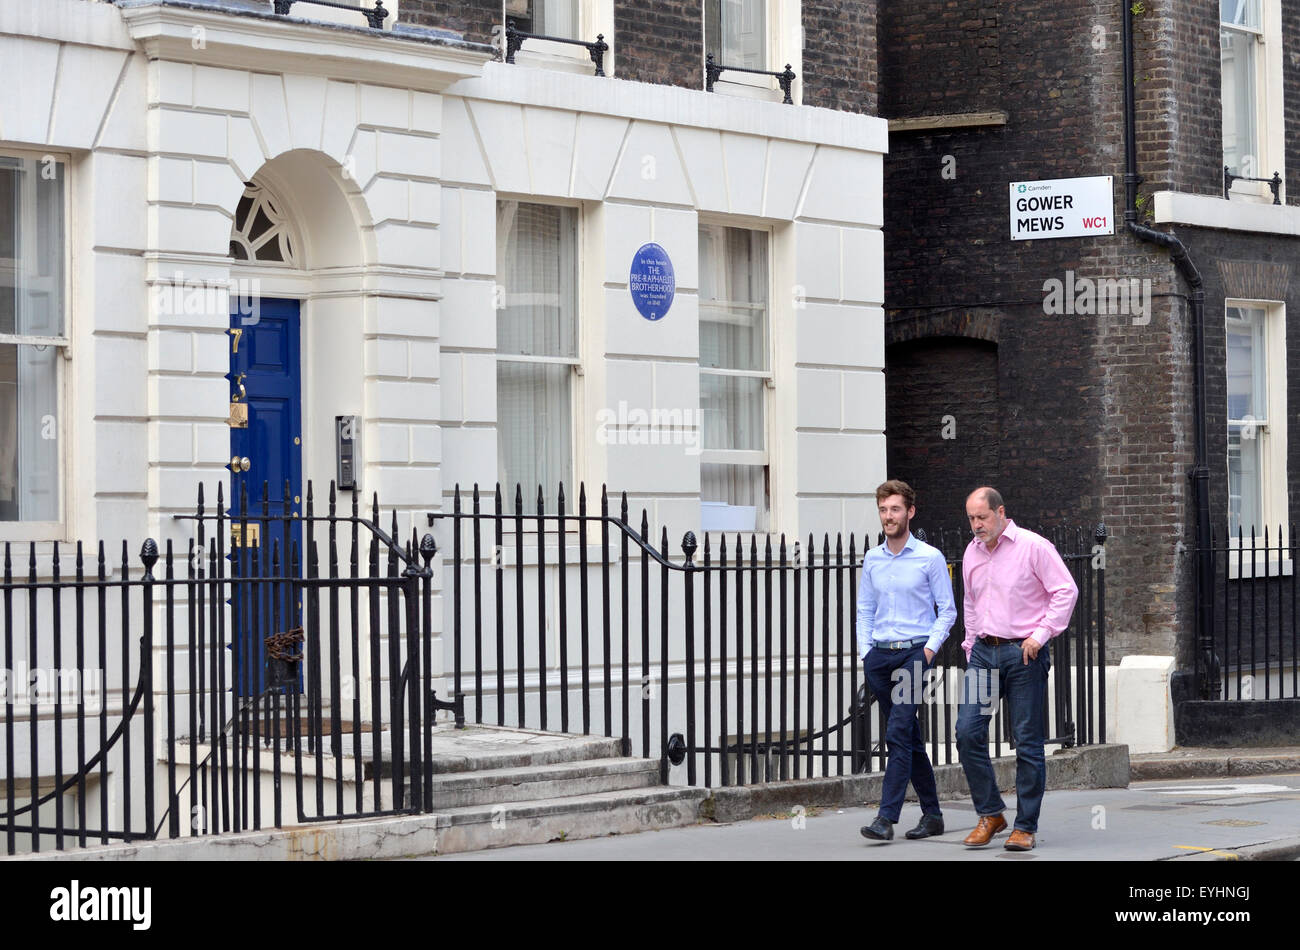 Londres, Inglaterra, Reino Unido. 7 Gower Street, Camden, WC1. Placa azul señala que "en esta casa EL PRE RAPHAELITE BROTHERHOOD fue fundada' Foto de stock